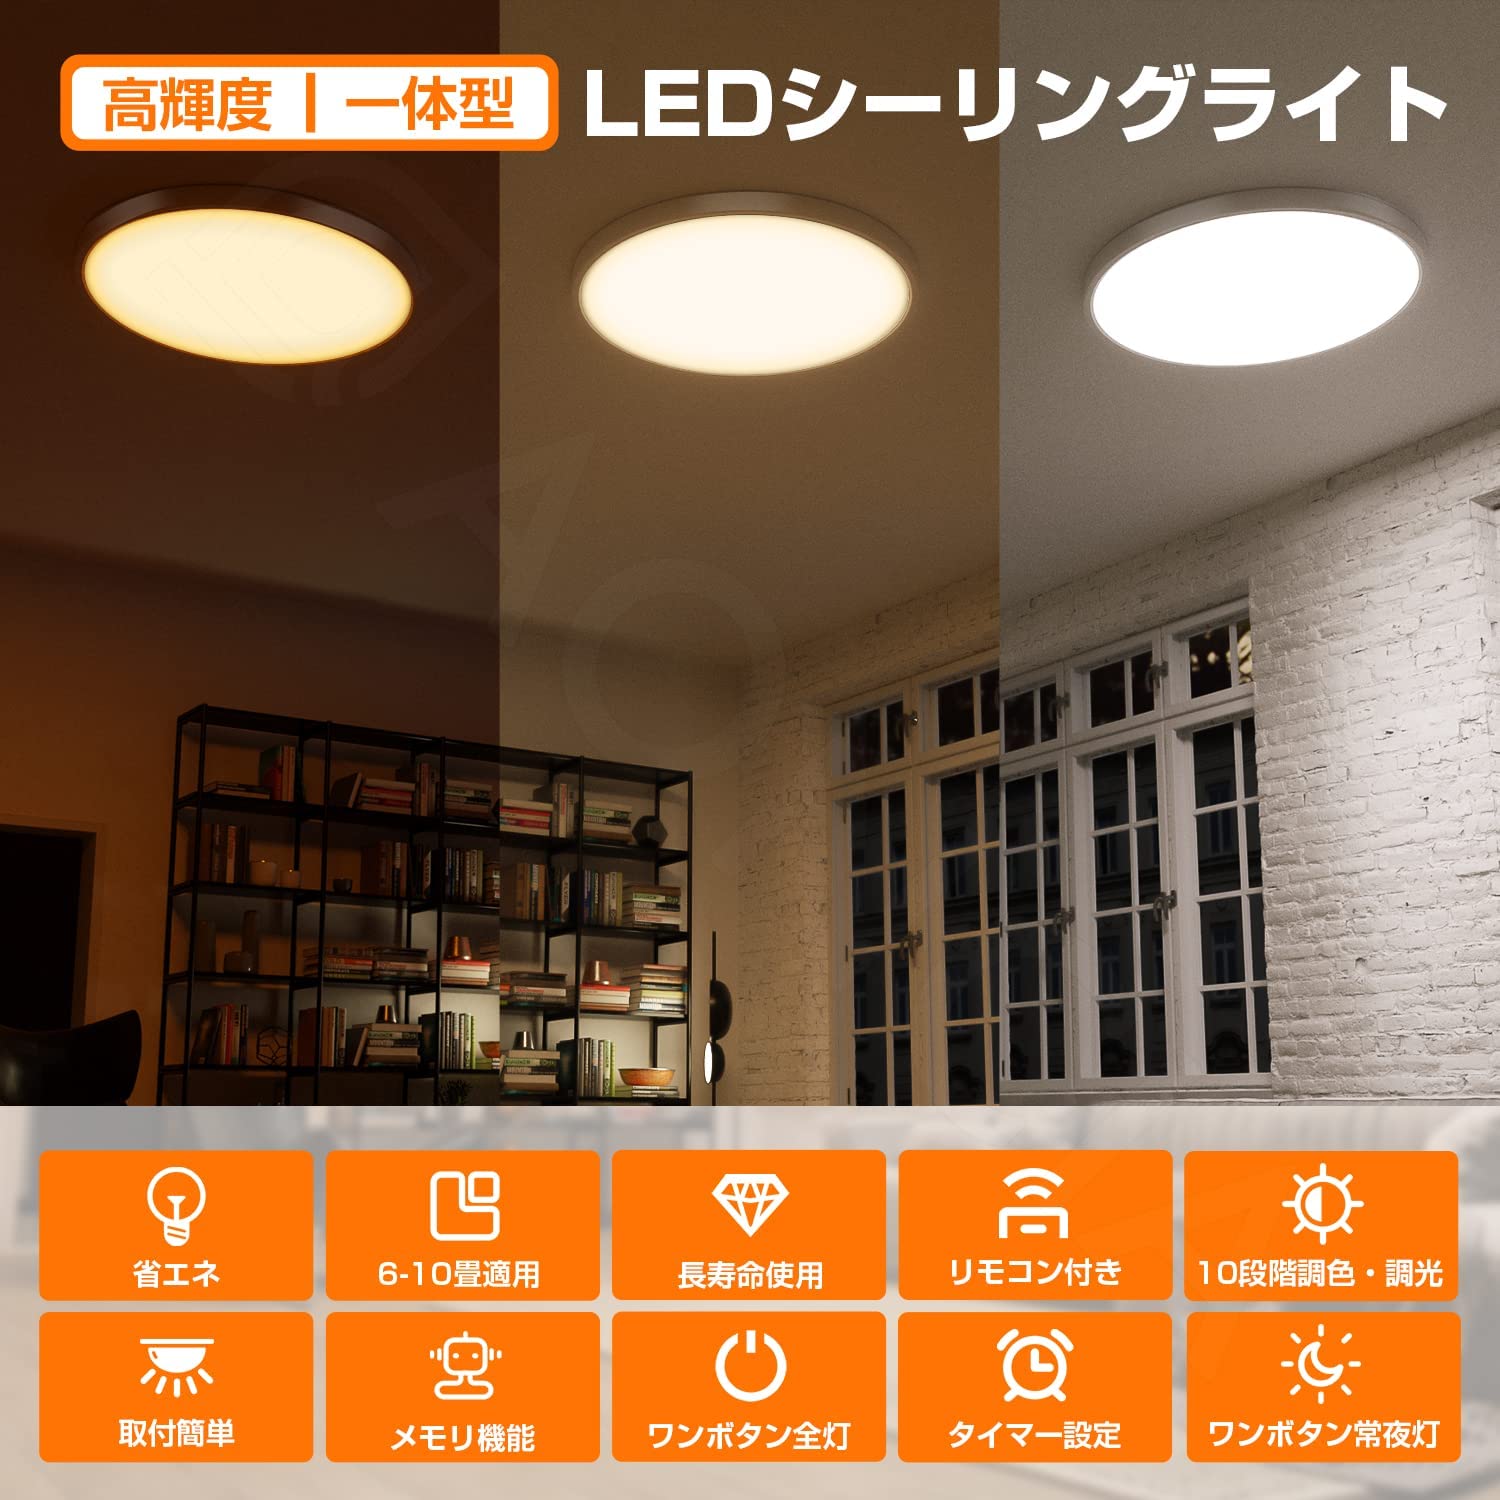 AC-LED-X40W LED ceiling light